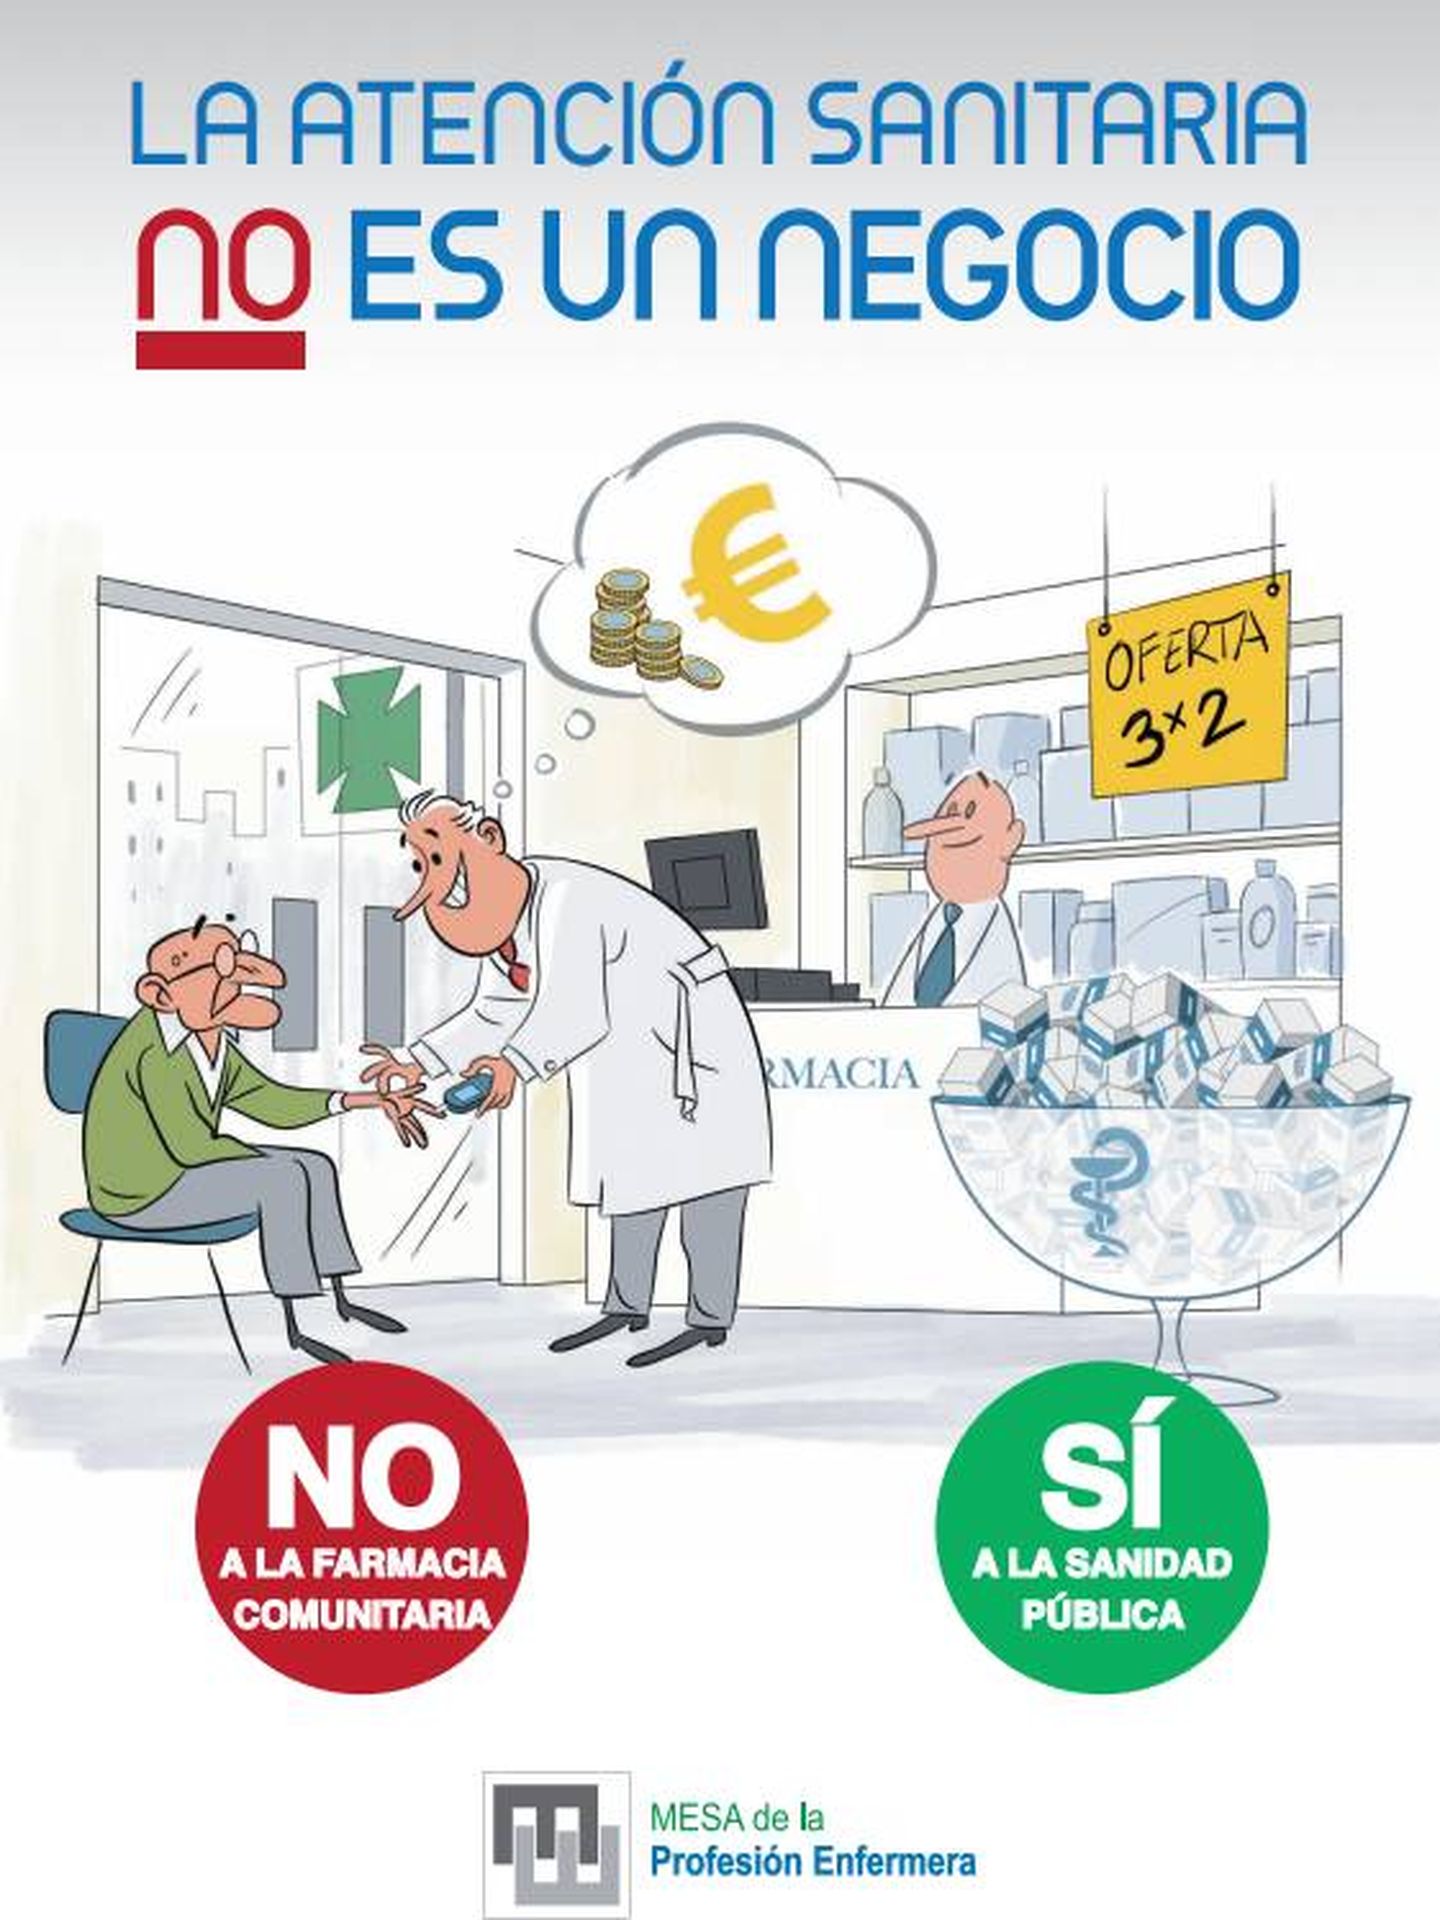 Así son los folletos que los enfermeros van a repartir en los ambulatorios españoles. (CGE)